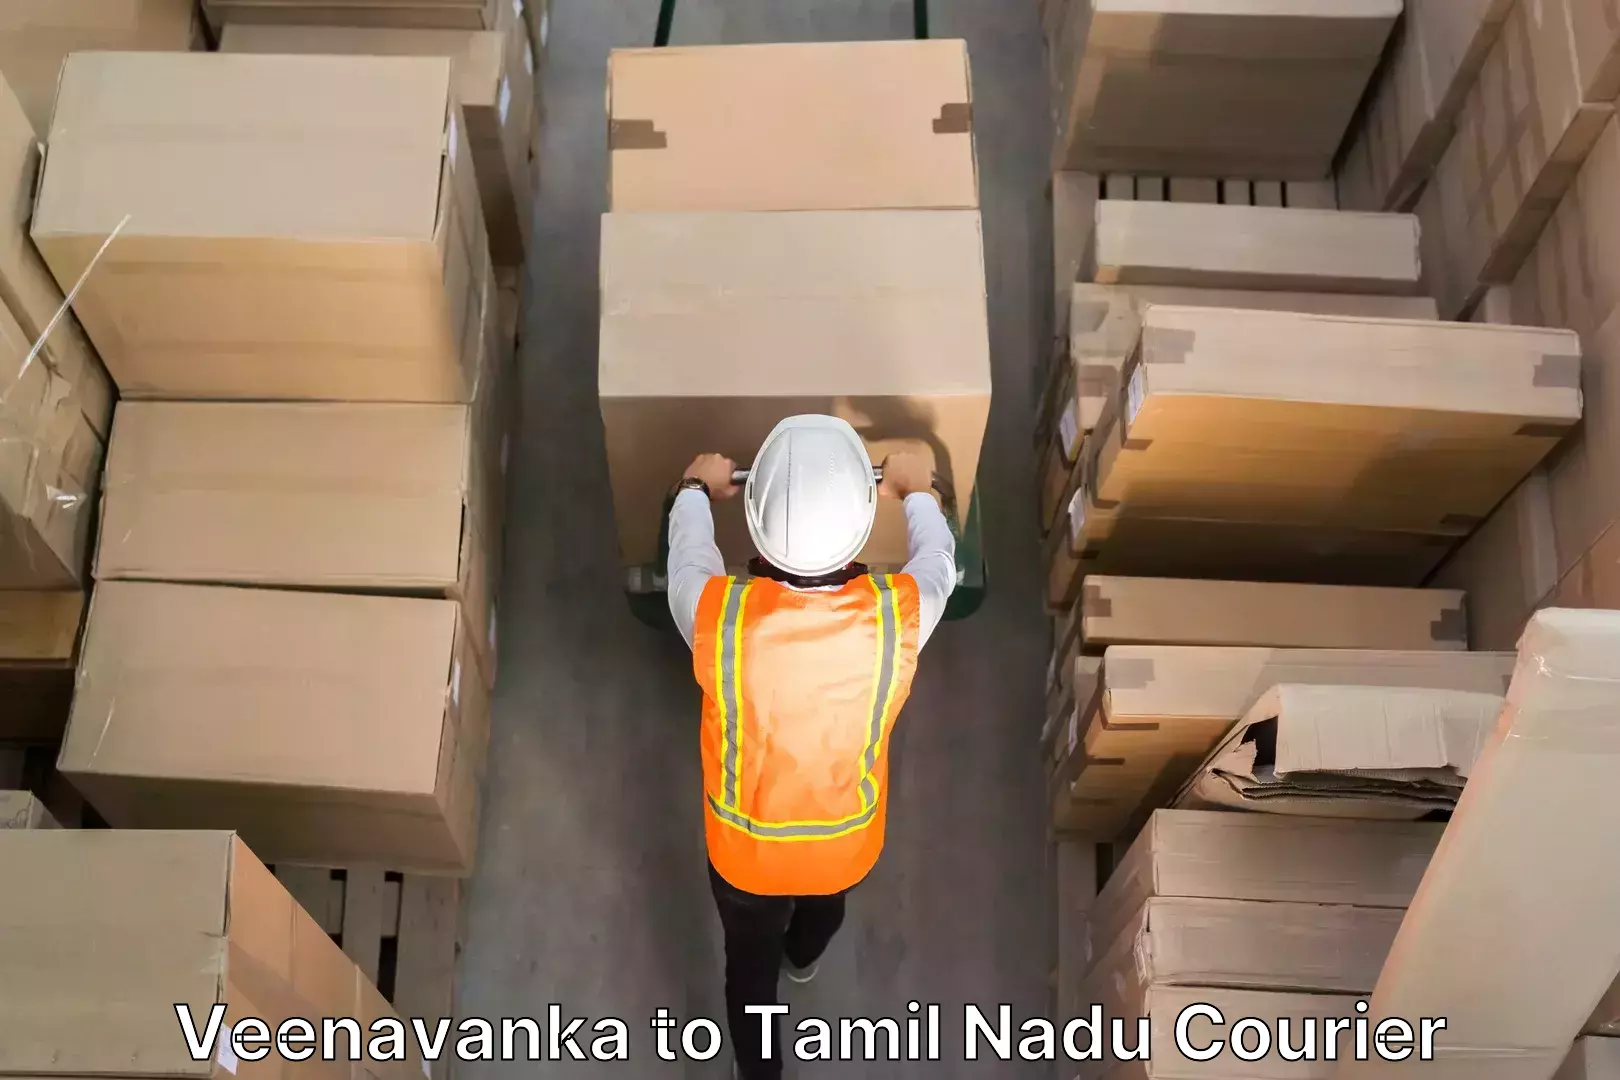 Furniture moving and handling Veenavanka to Tamil Nadu